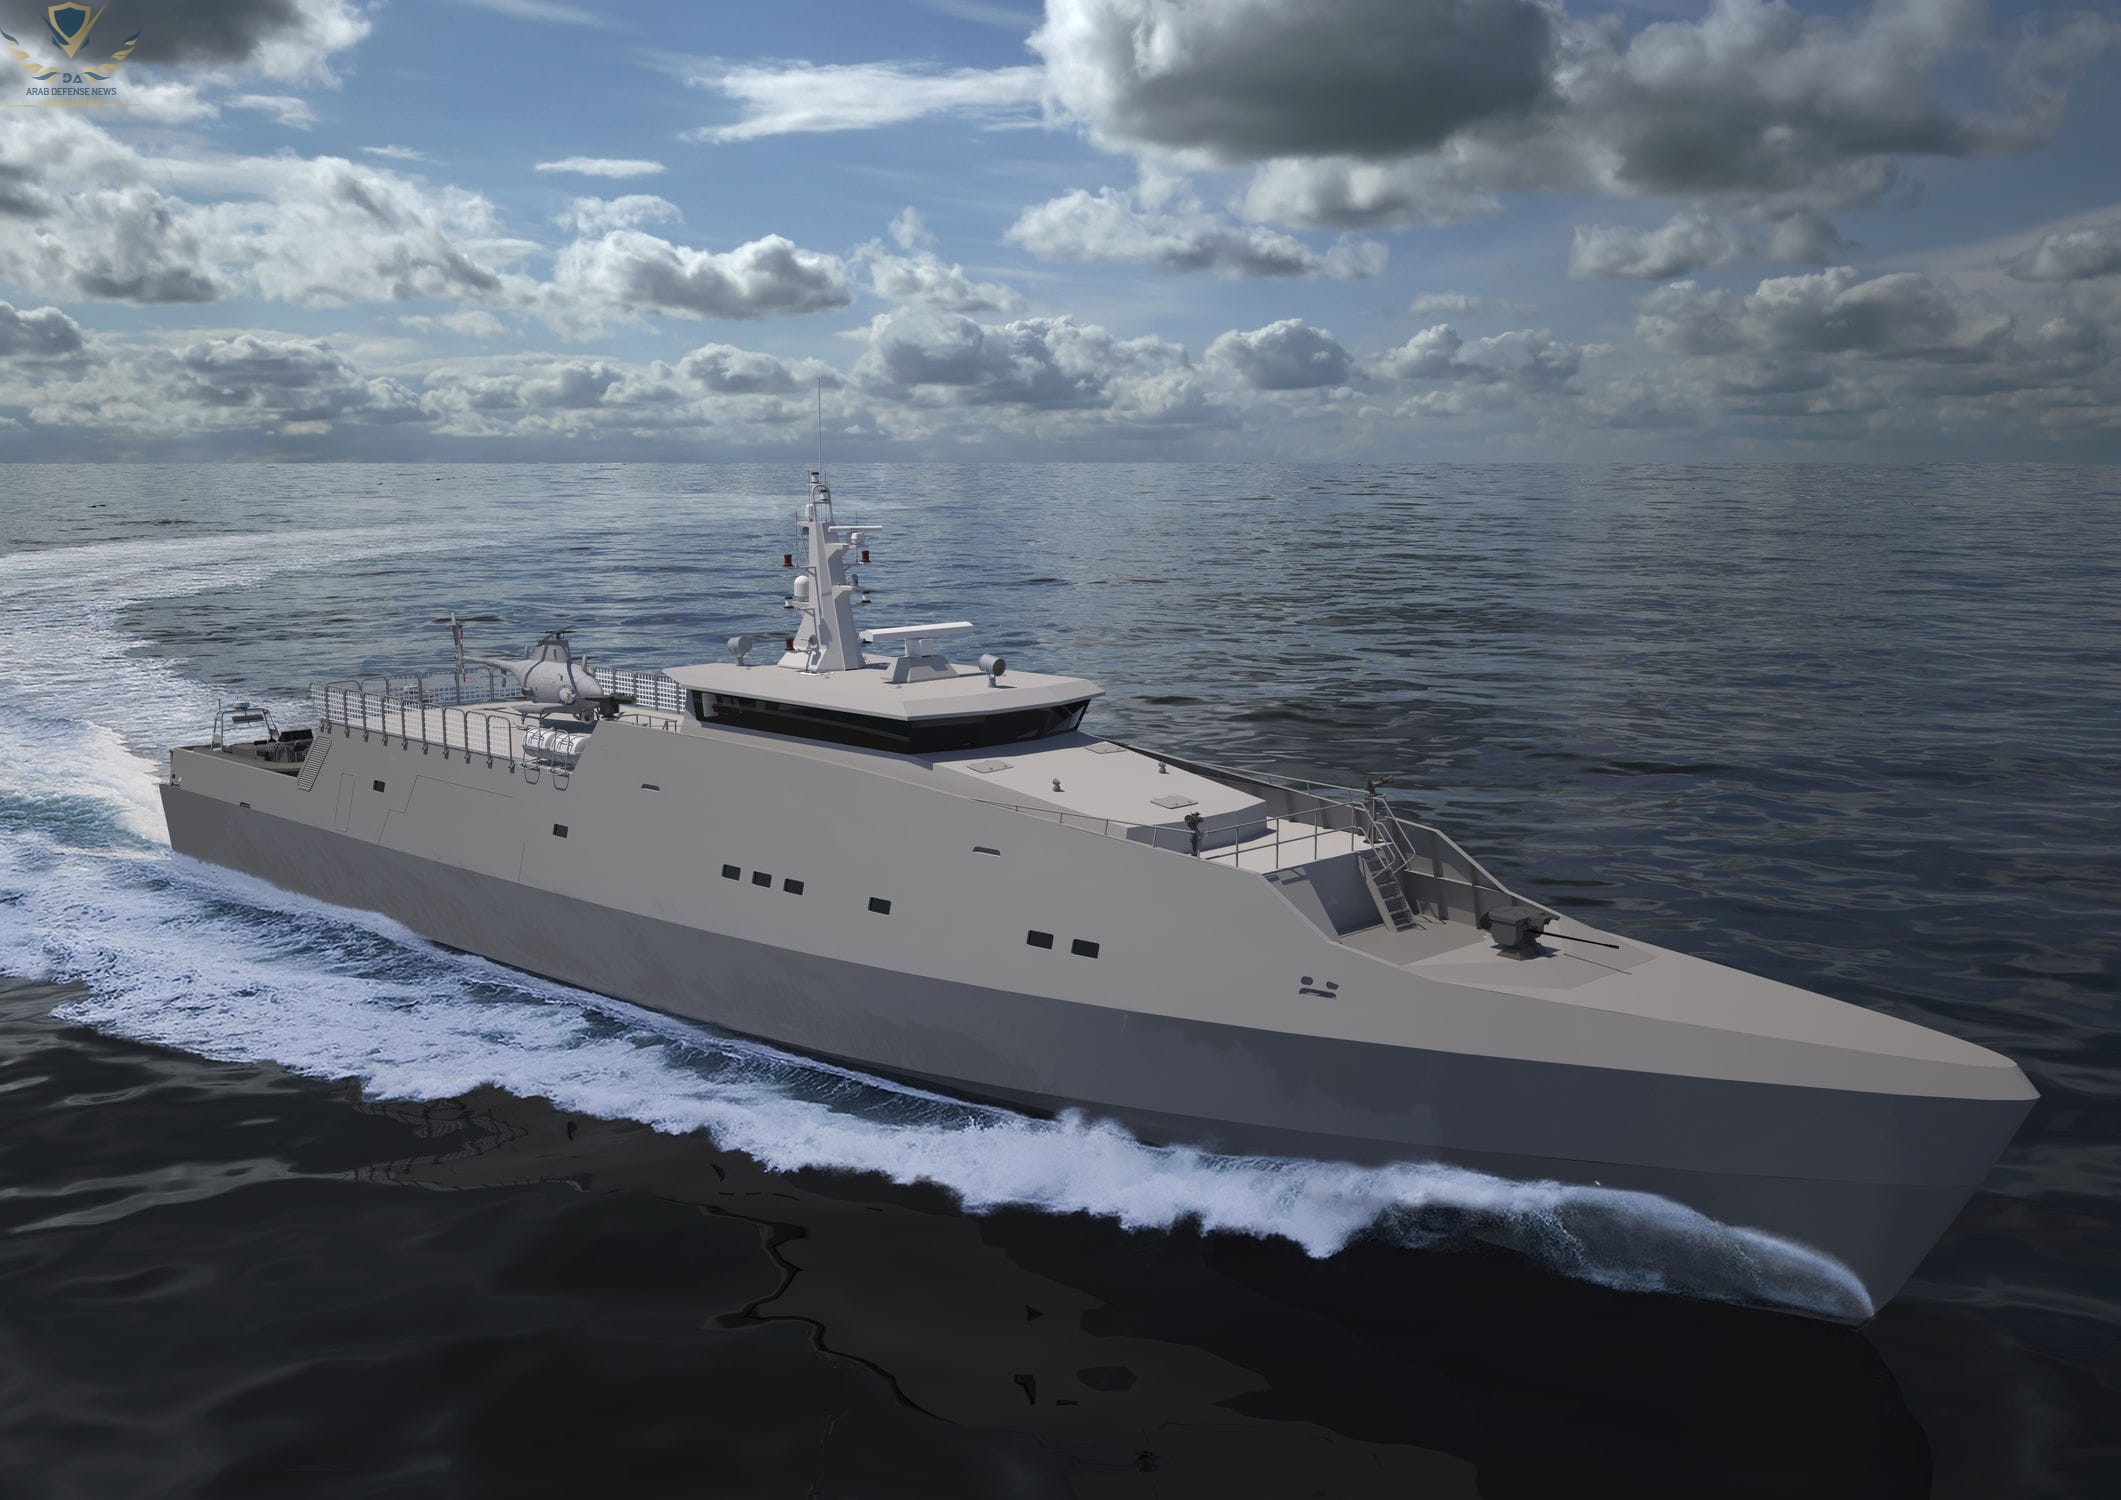 الكونسورتيوم الصيني Poly Technologies يكشف النقاب عن سفينة  ثقيلة جديدة PV58M